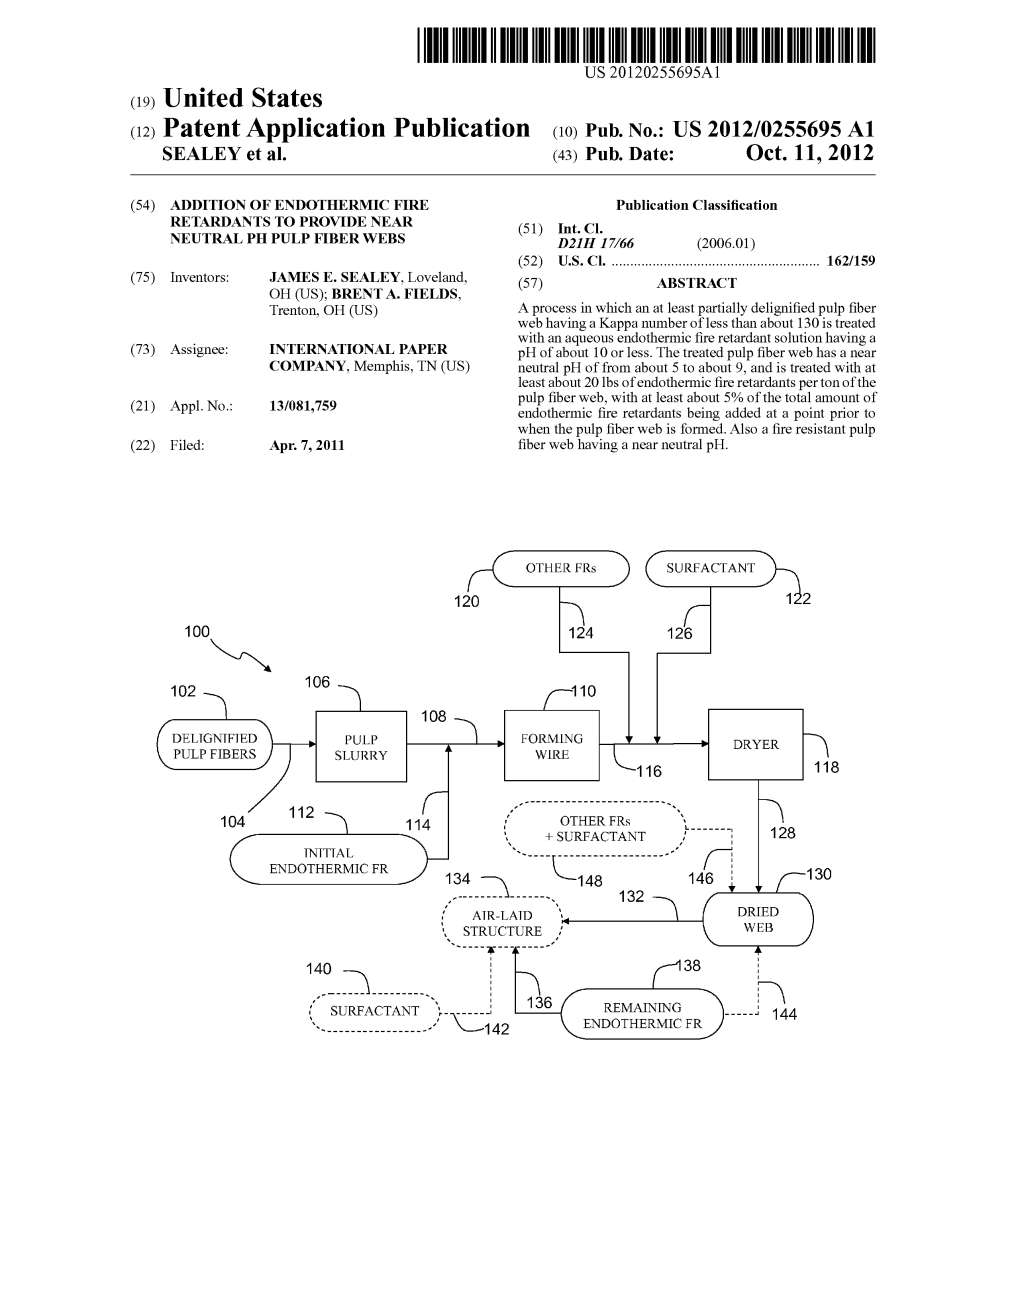 (12) Patent Application Publication (10) Pub. No.: US 2012/0255695A1 SEALEY Et Al